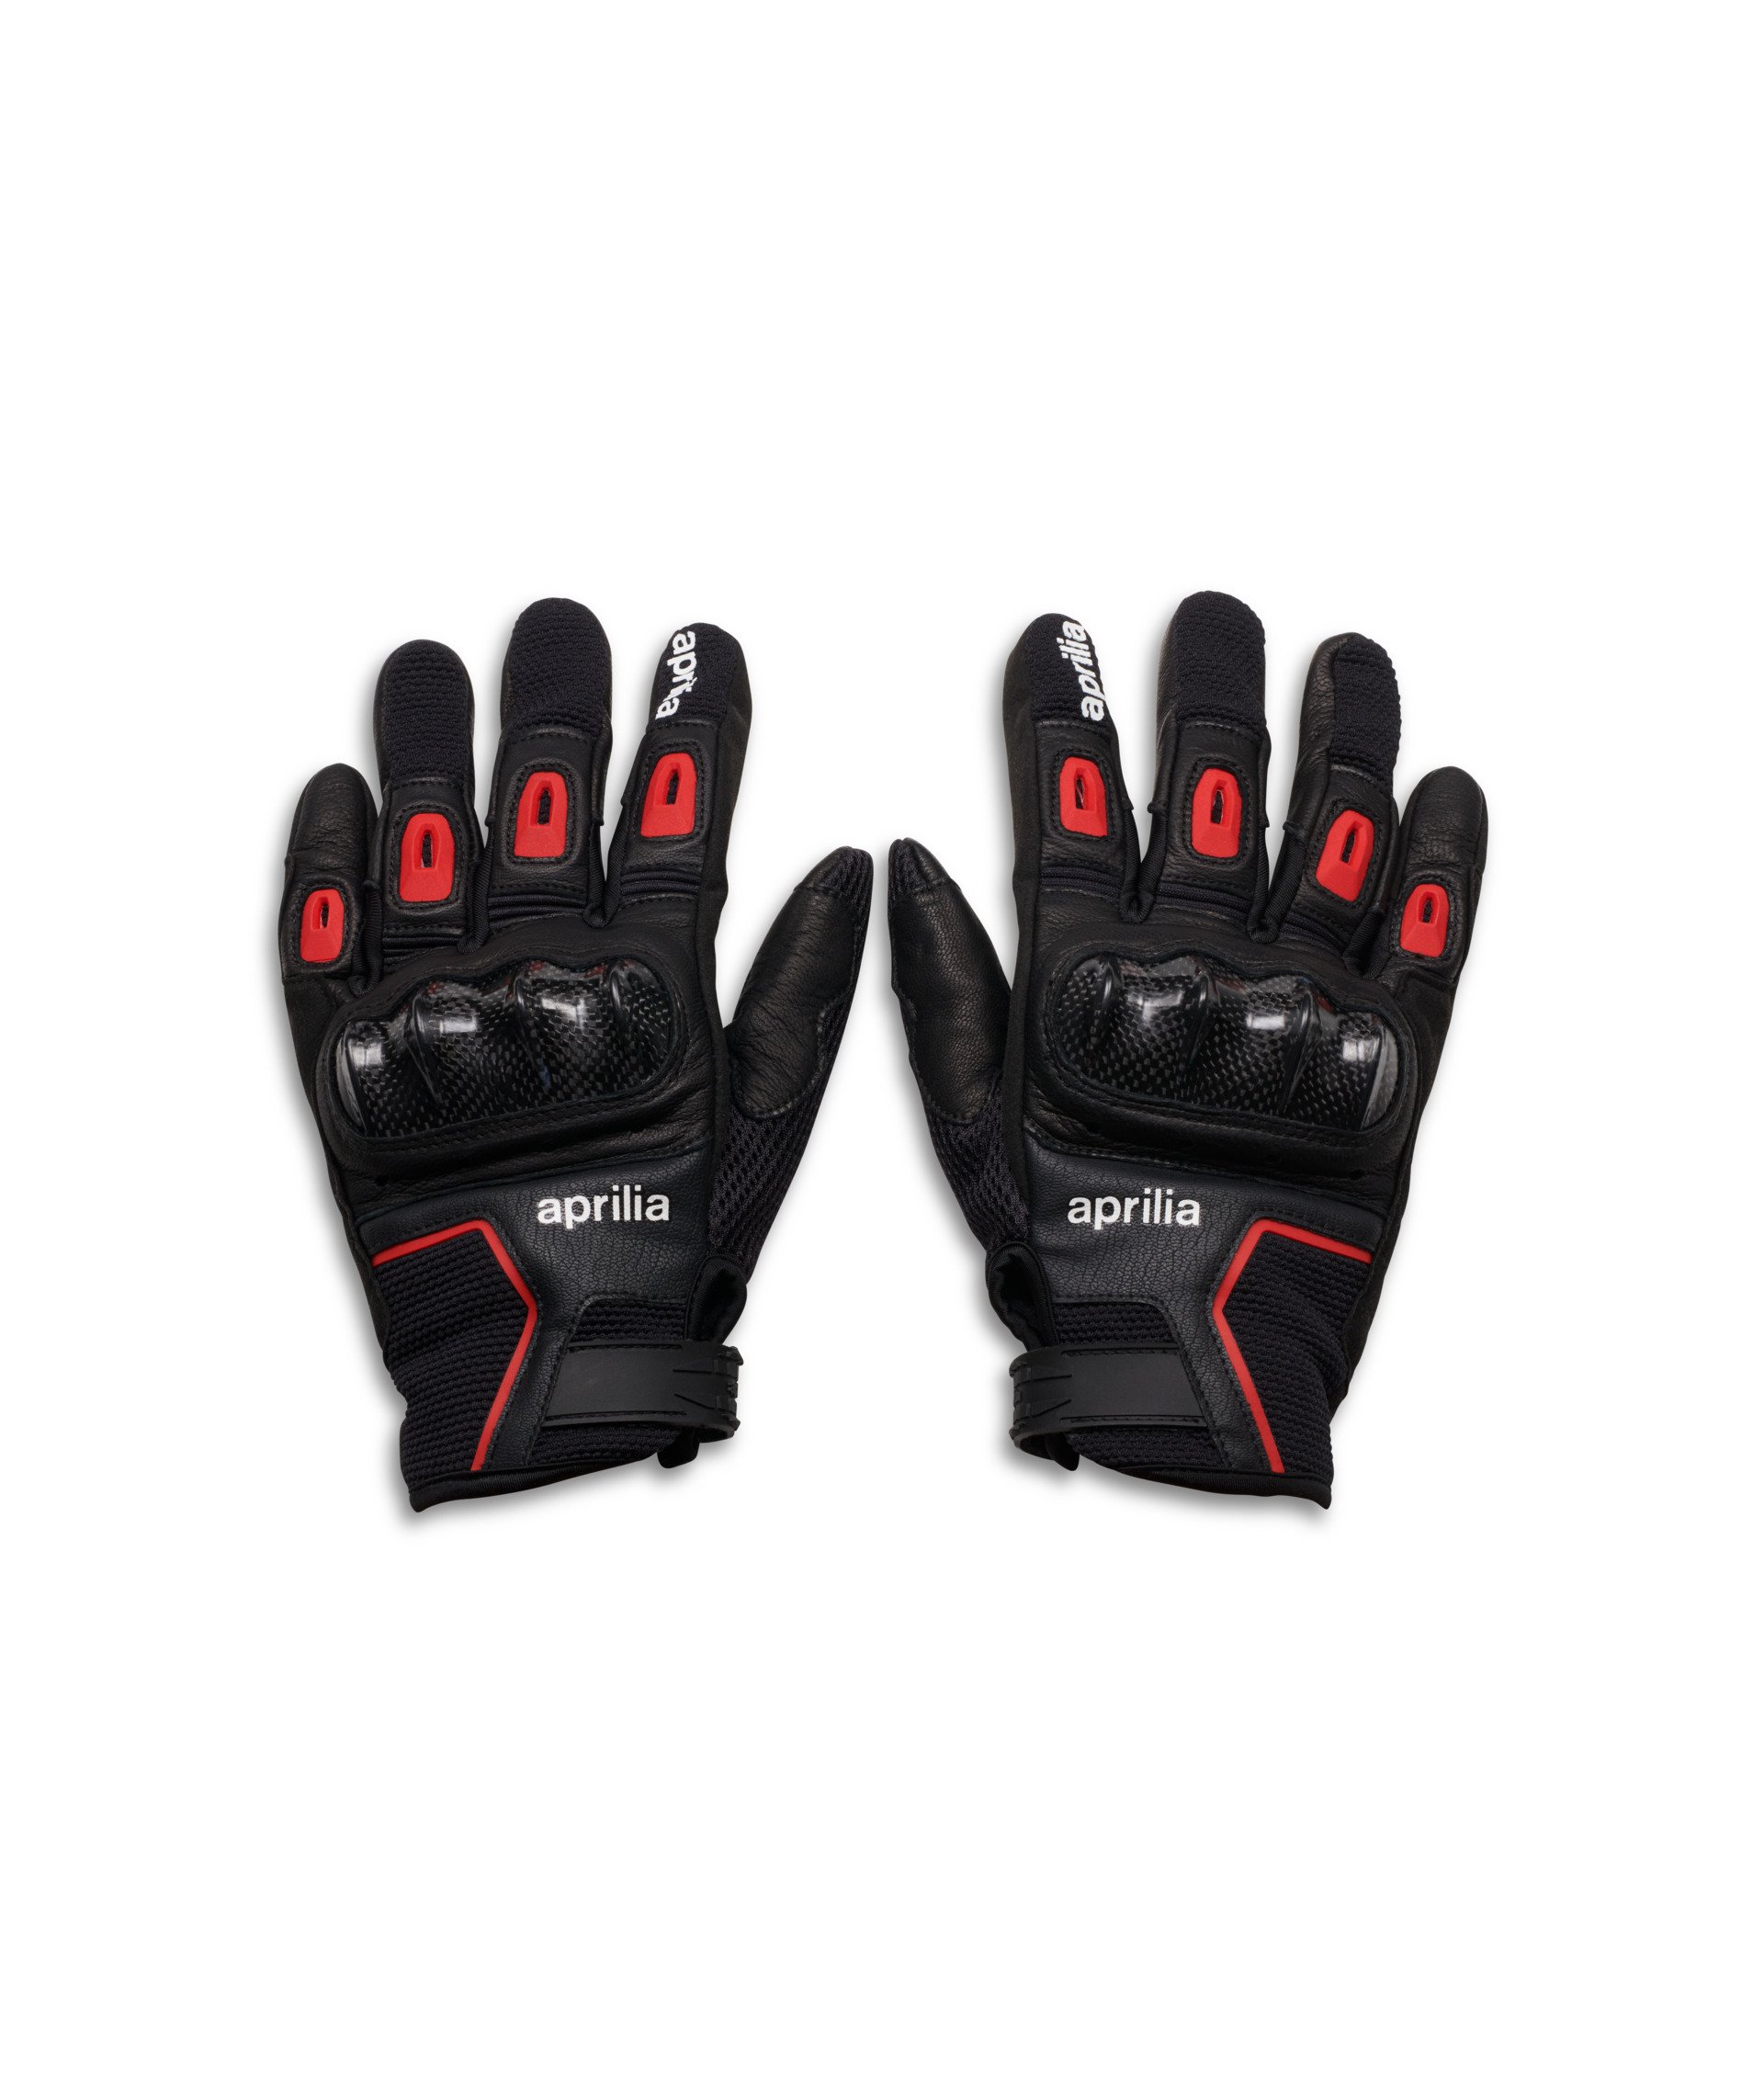 Aprilia sport gloves | Gloves | Rider Apparel | Full Catalogue 